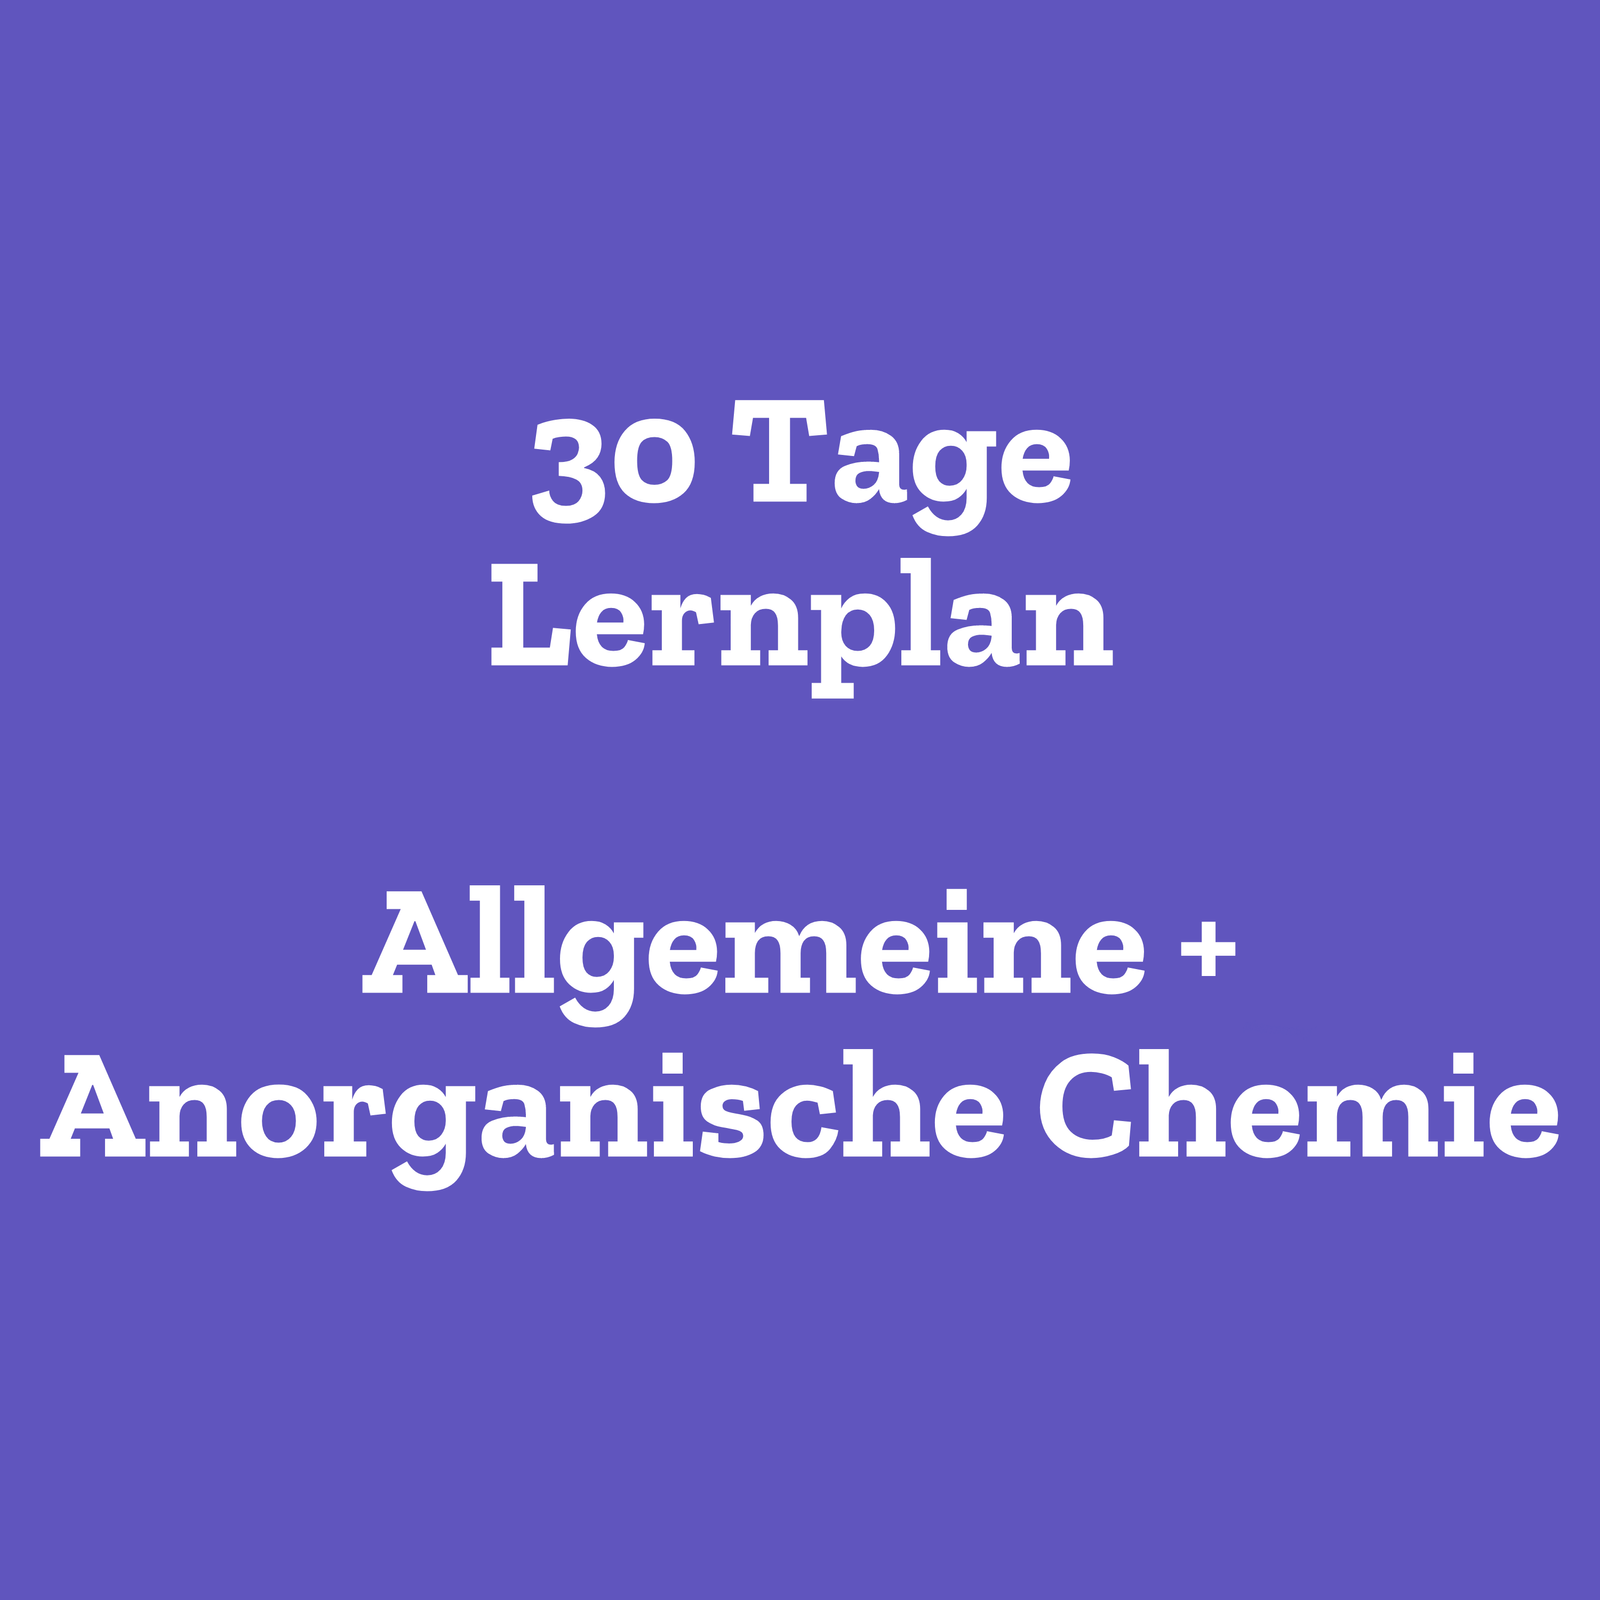 30 Tage Lernplan Anorganische + Allgemeine Chemie